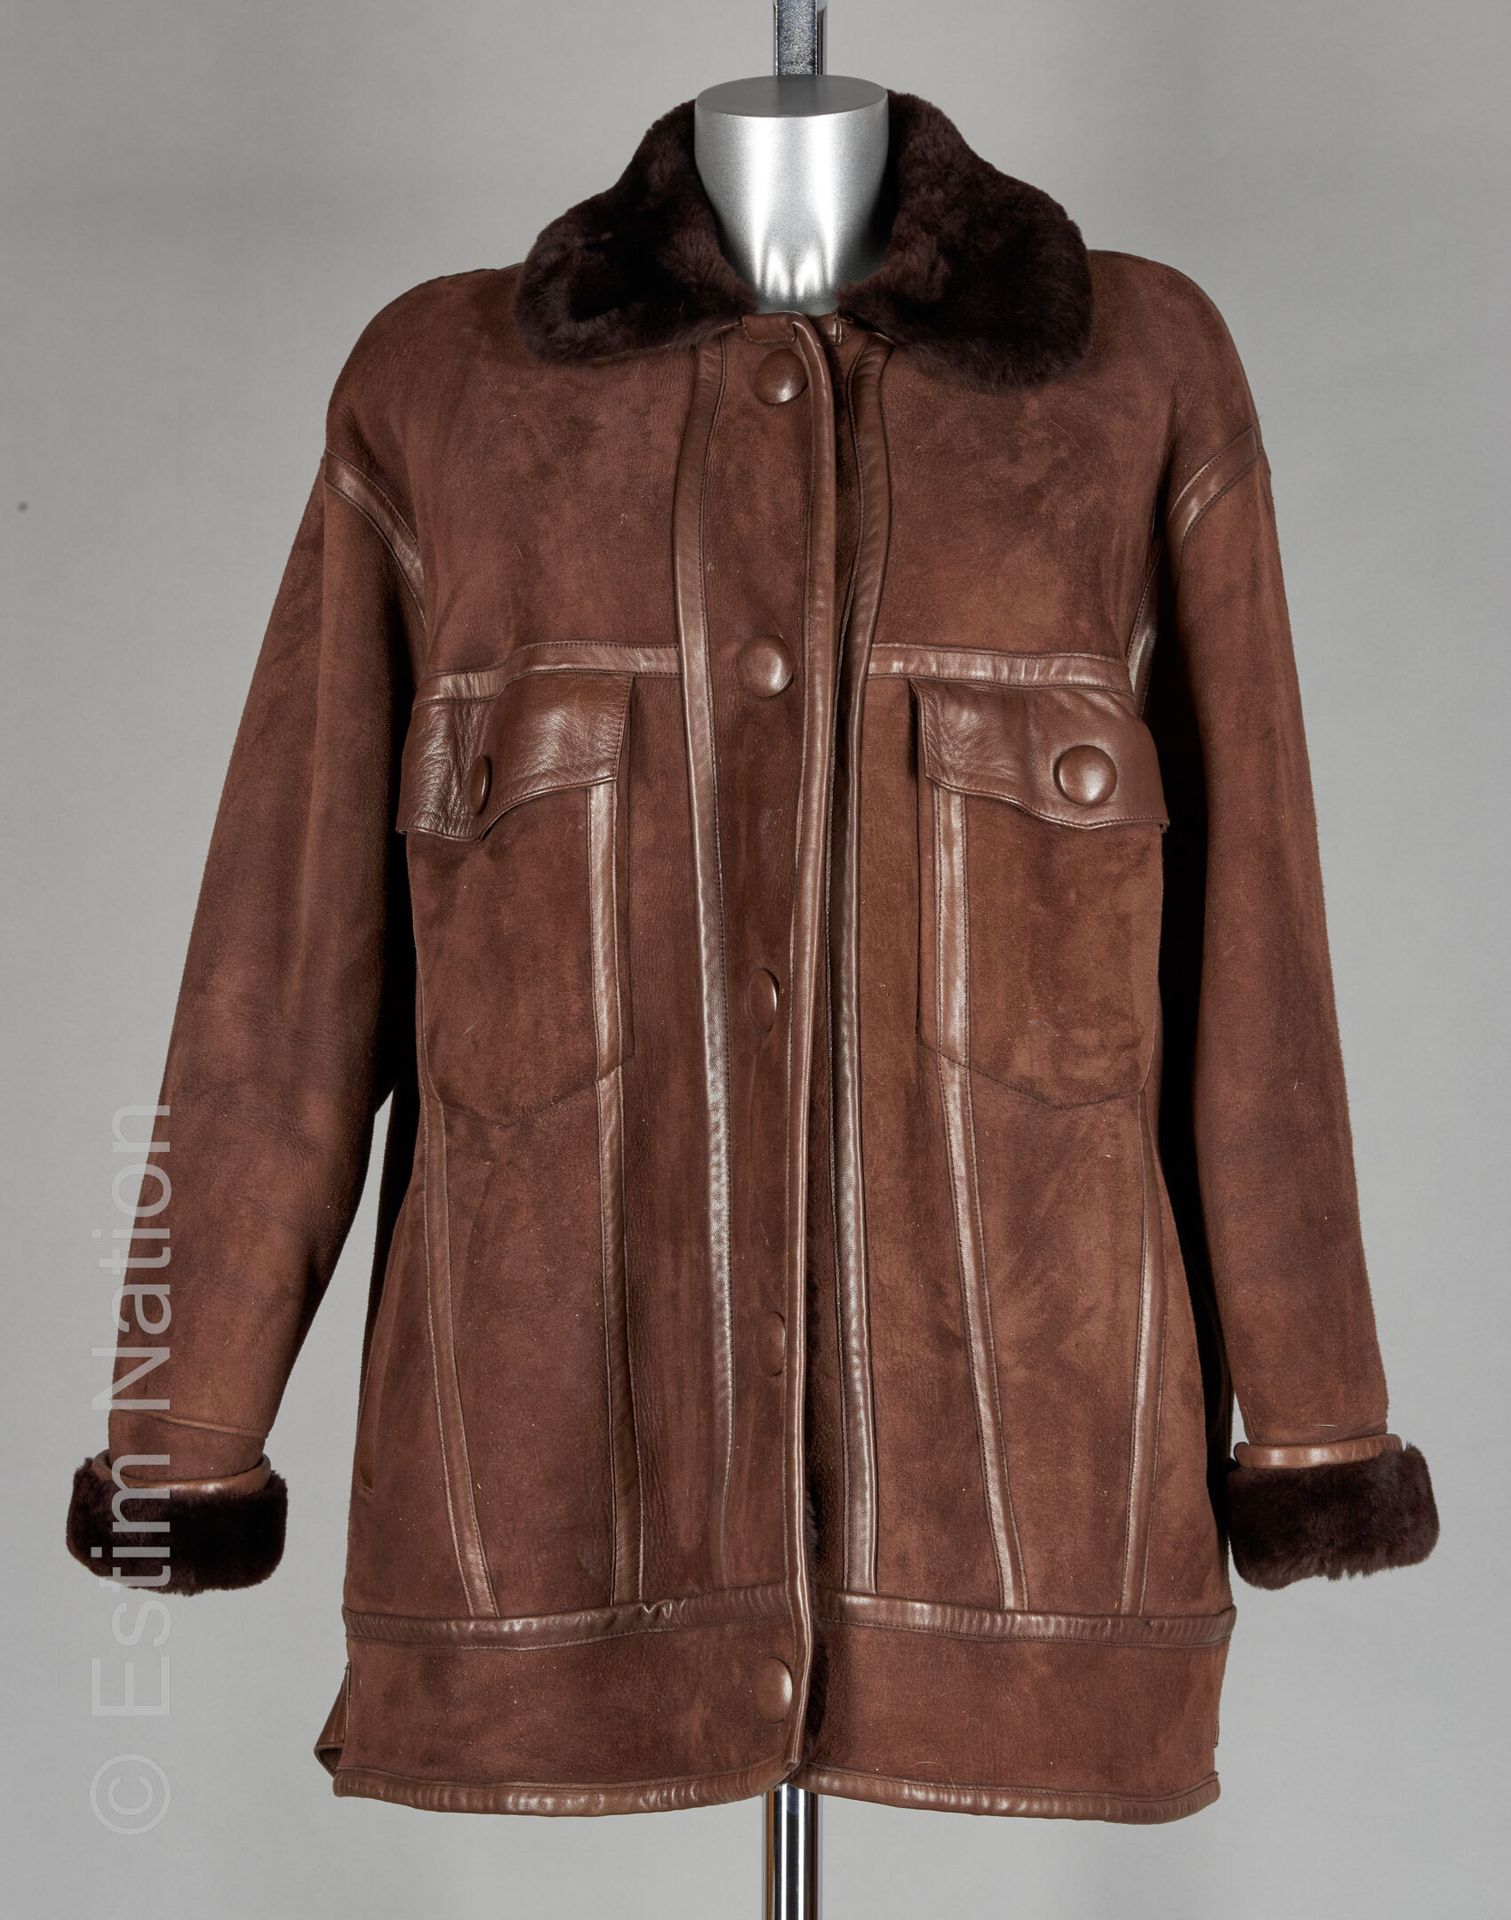 GEORGES RECH Abrigo de piel de lana color chocolate y piel de cordero, cuatro bo&hellip;